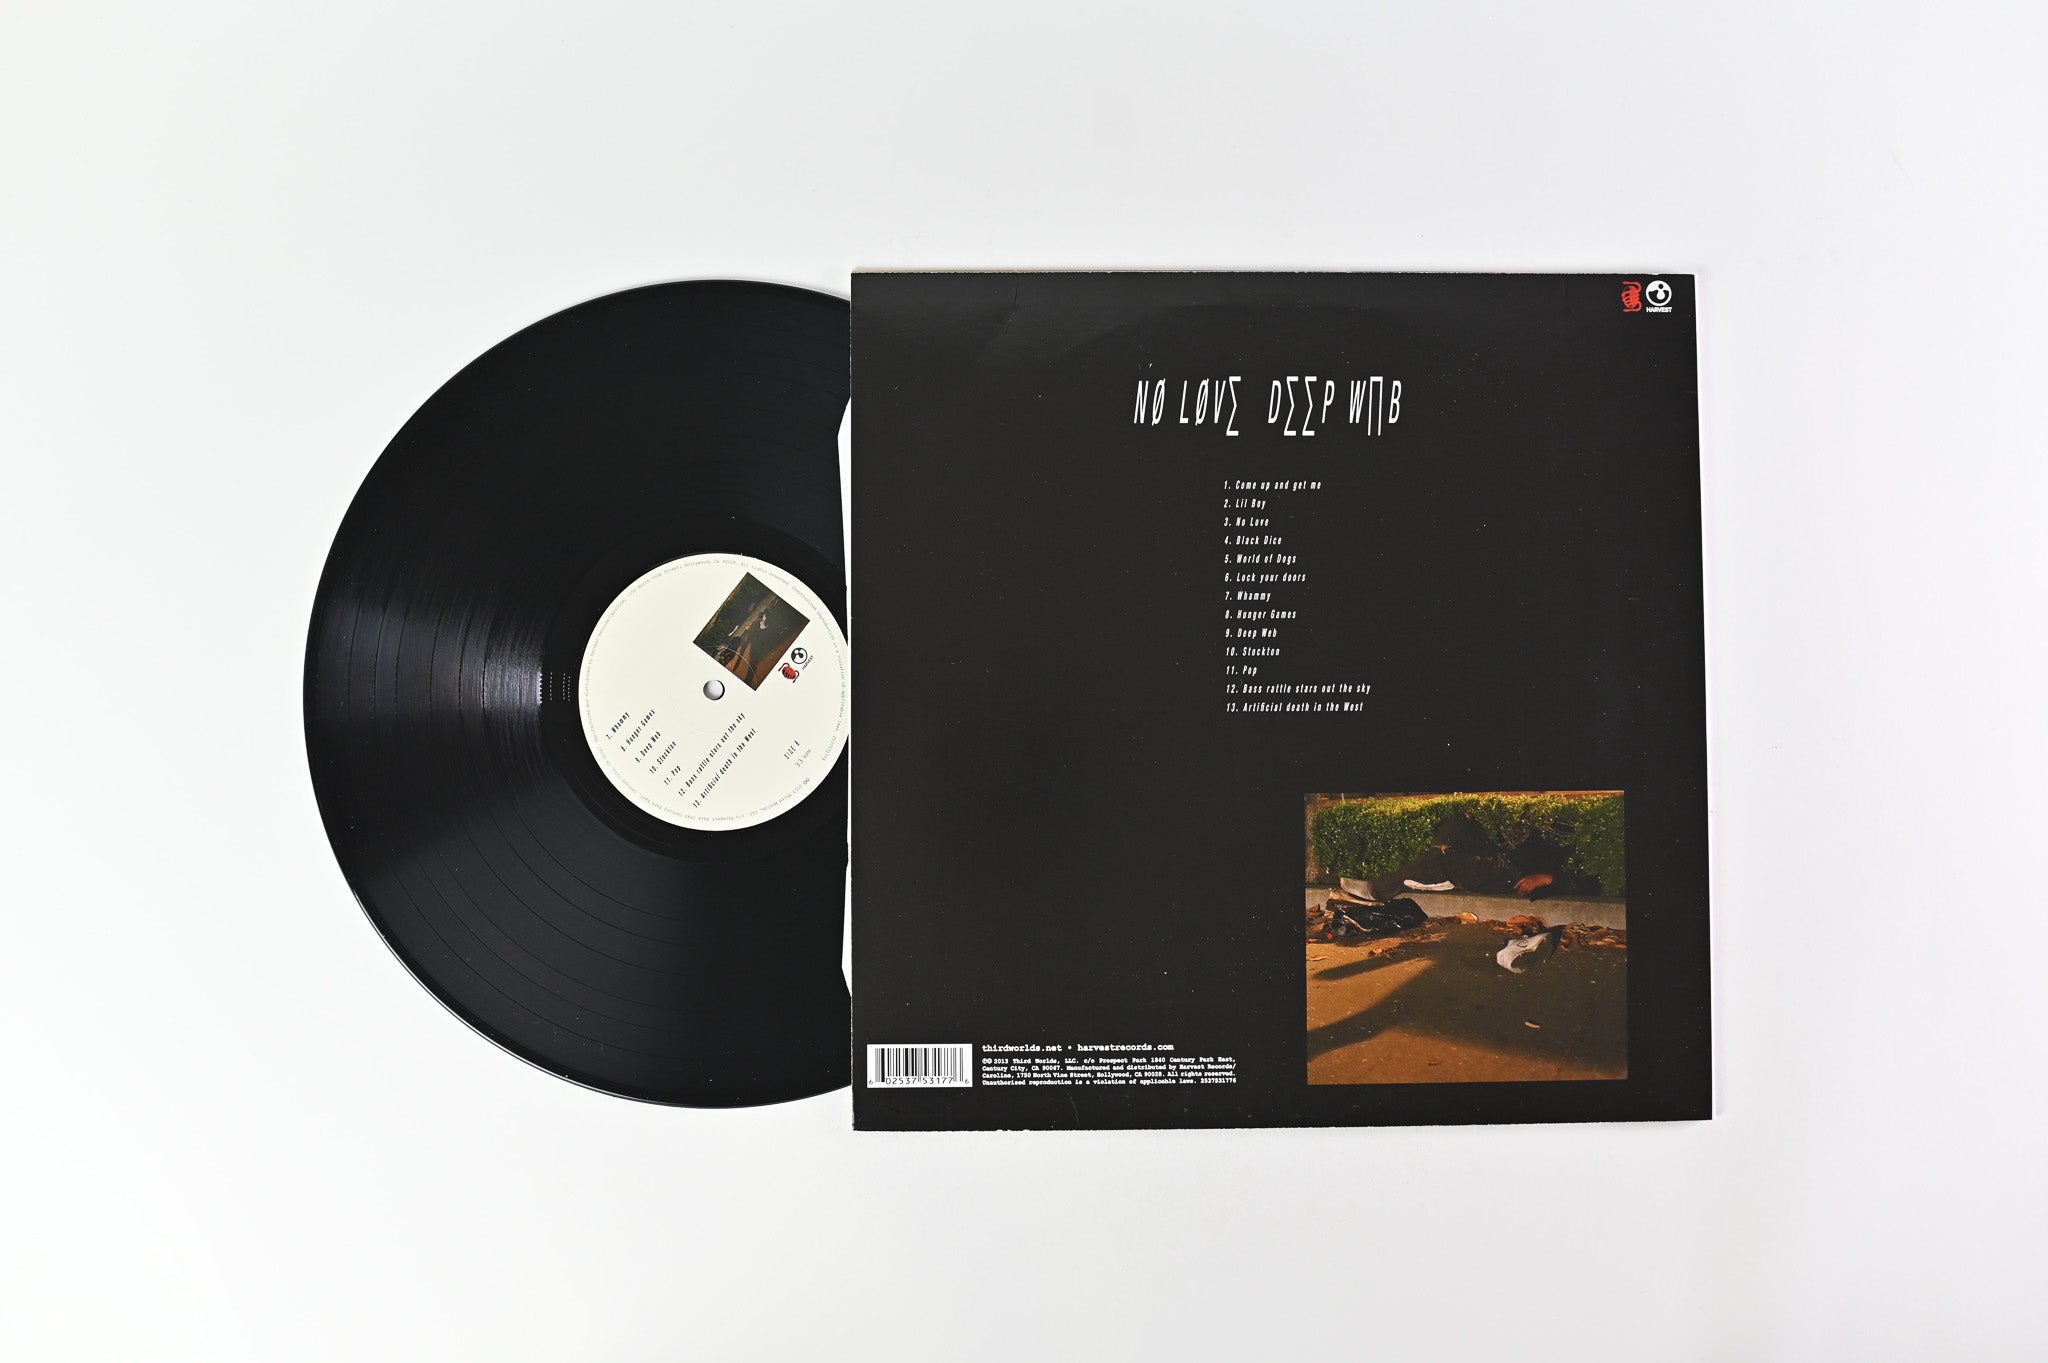 Death Grips - No Love Deep Web Reissue on Third Worlds/Harvest